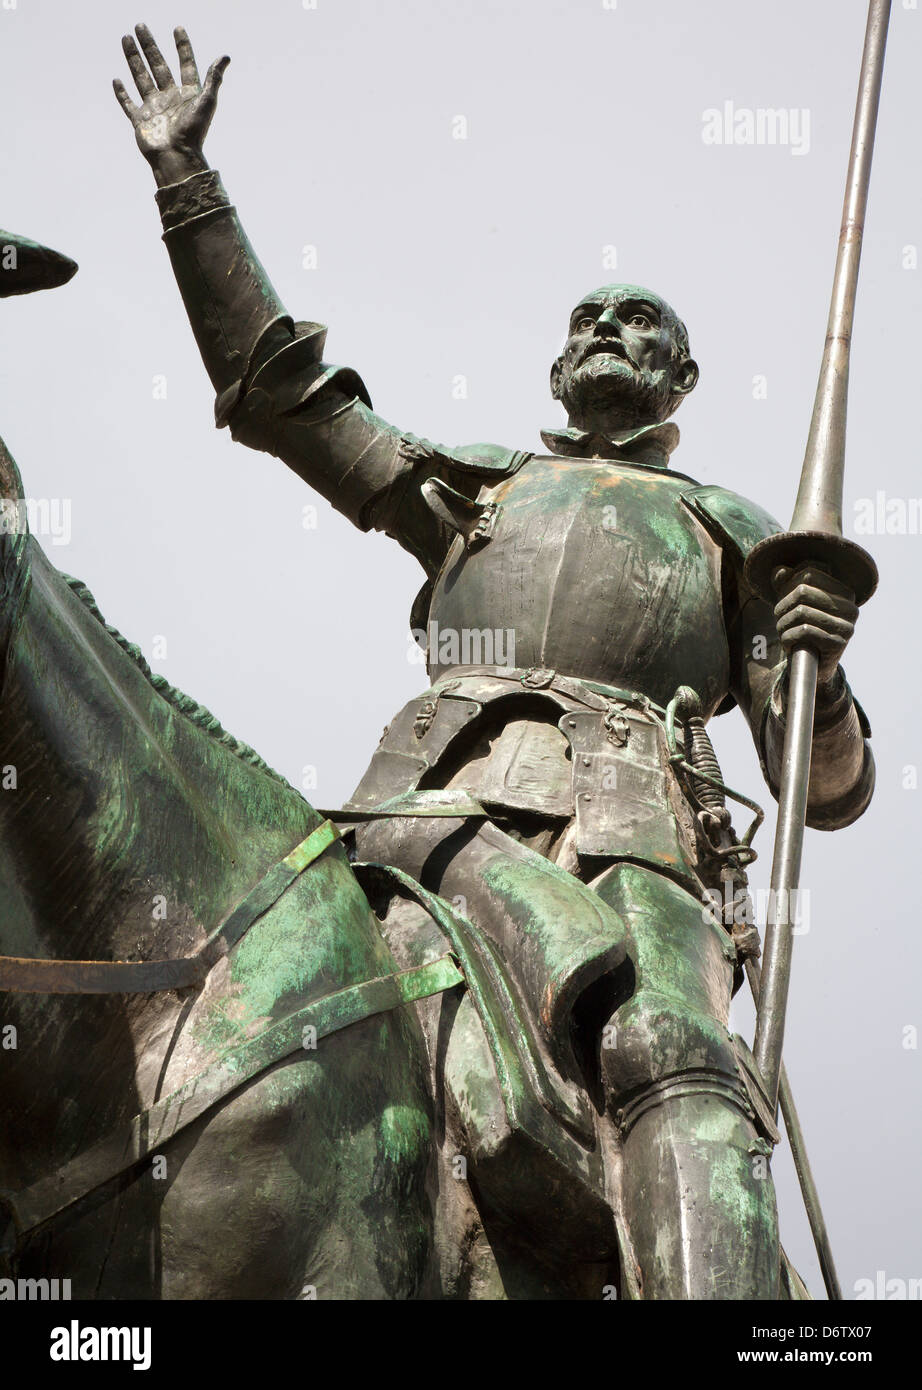 Madrid - statue de Don Quichotte de Cervantes memorial par le sculpteur Lorenzo Coullaut Valera (1925 - 1930) sur la Plaza Espana. Banque D'Images